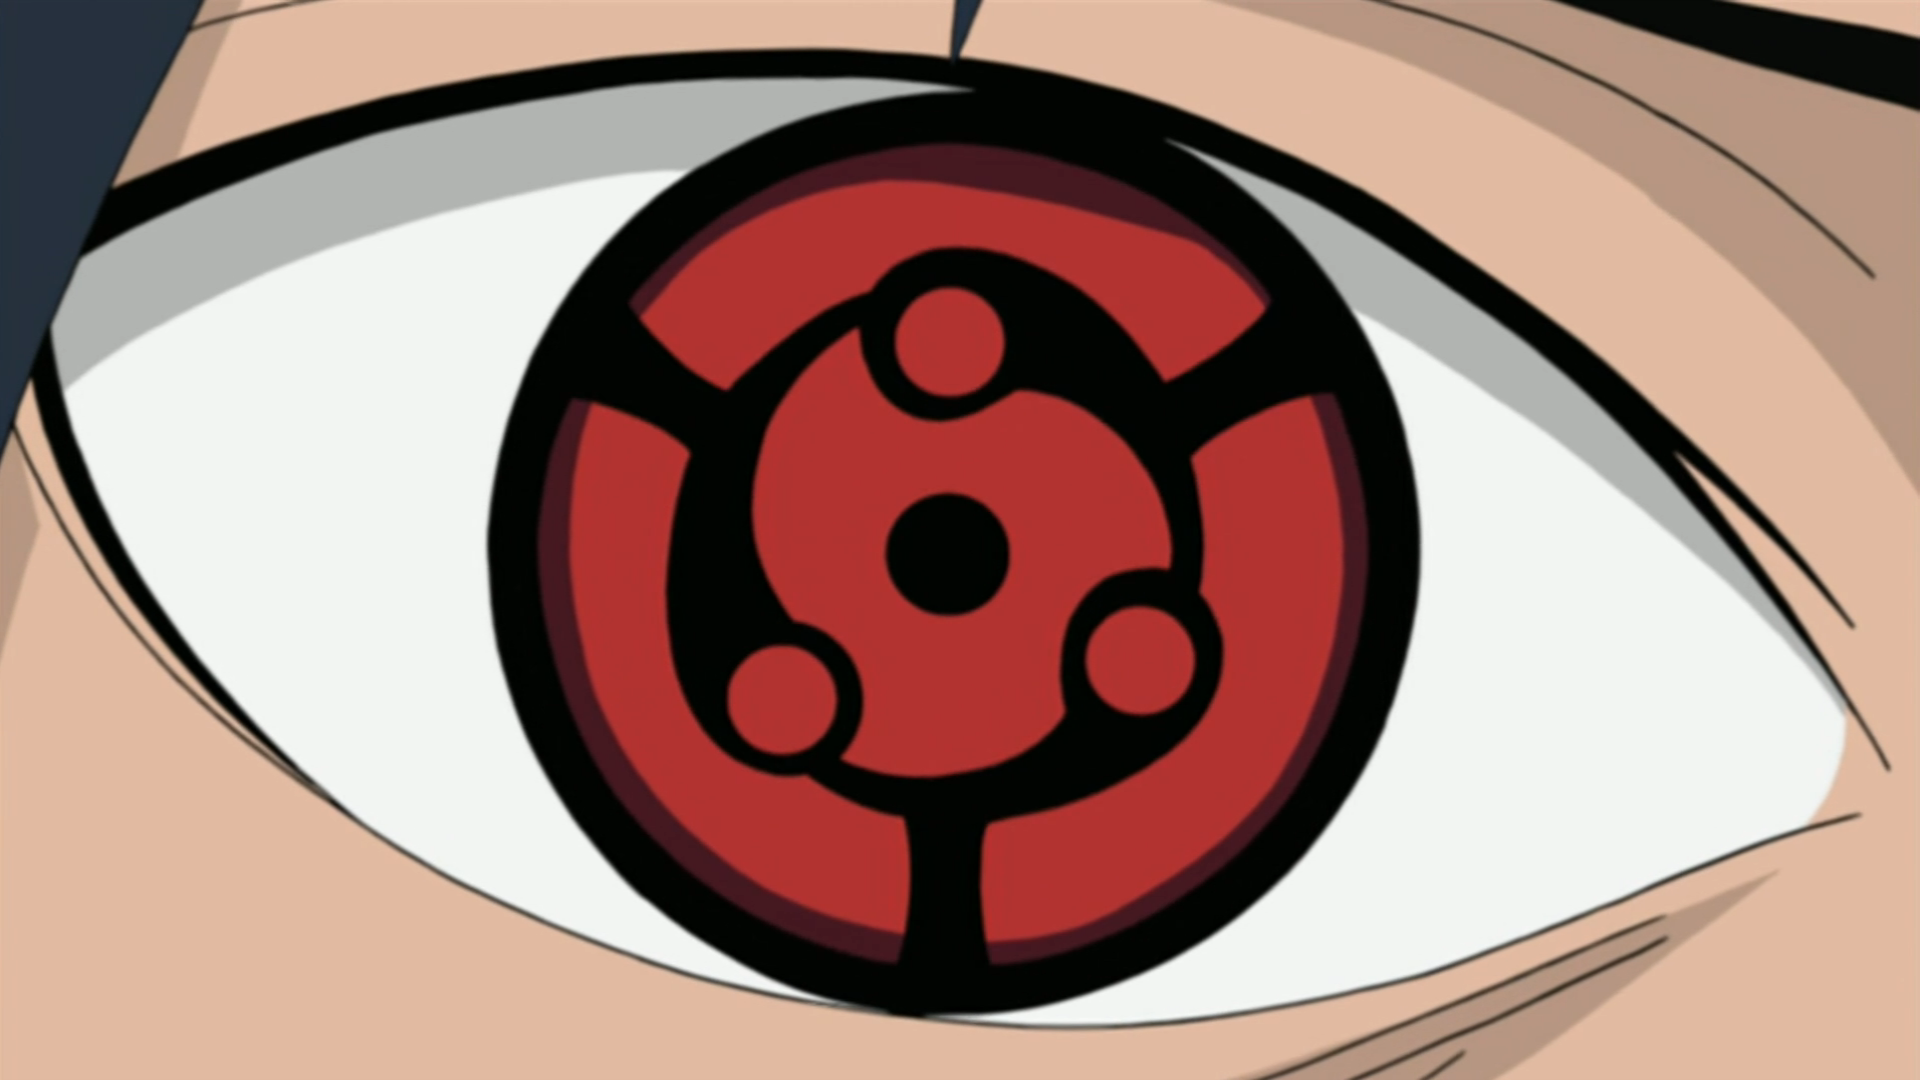 Naruto o Mundo Shinobi - Doujutsus: Como se despertam, usuários mais  conhecidos e seus poderes: ( se eu esqueci de algo pfv me avisem, ou me  corrijam se disse algo errado ).